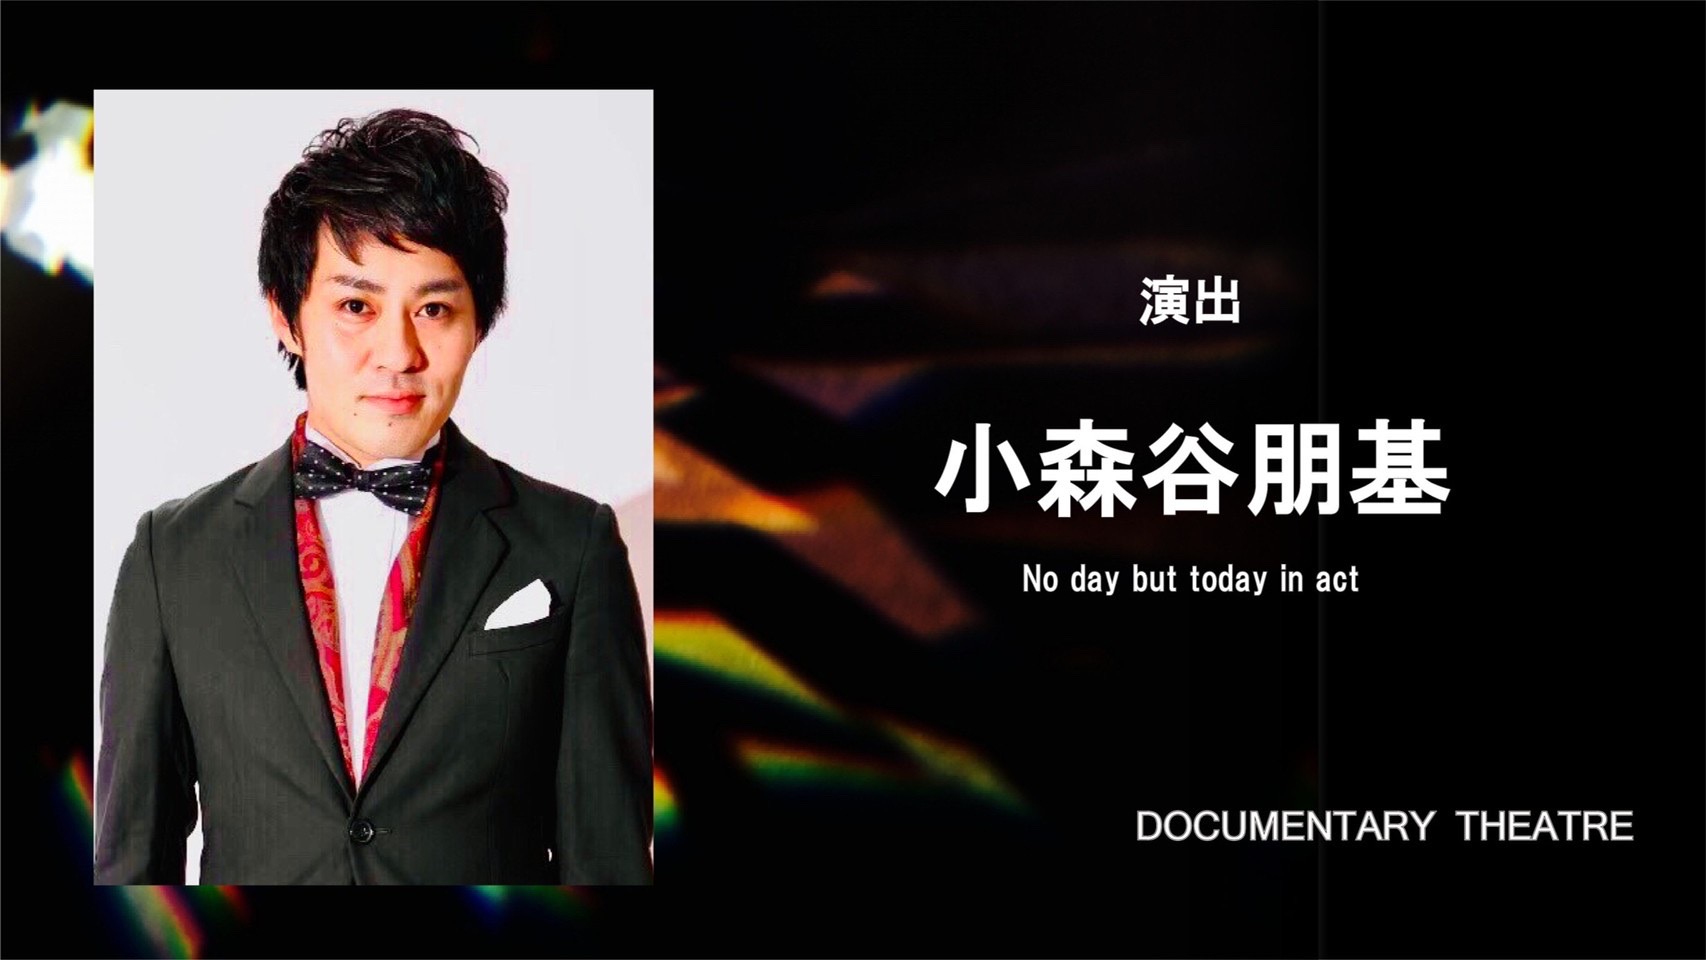 小森谷朋基(こもりやともき)さんが演出を担当するミュージカル『マスノカガミ』が上演